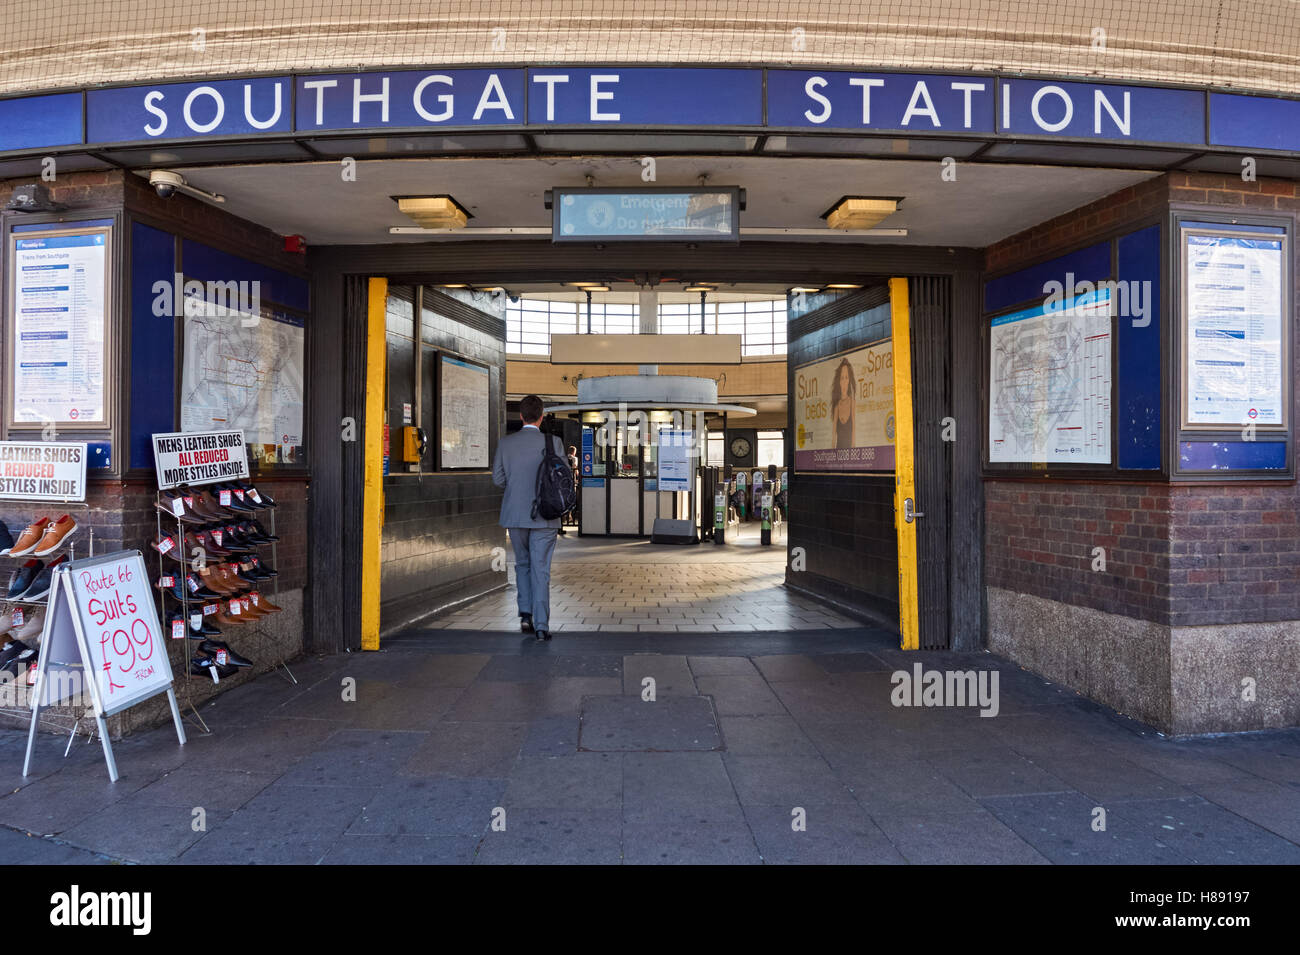 Entrée de la station de métro Southgate, Londres Angleterre Royaume-Uni UK Banque D'Images